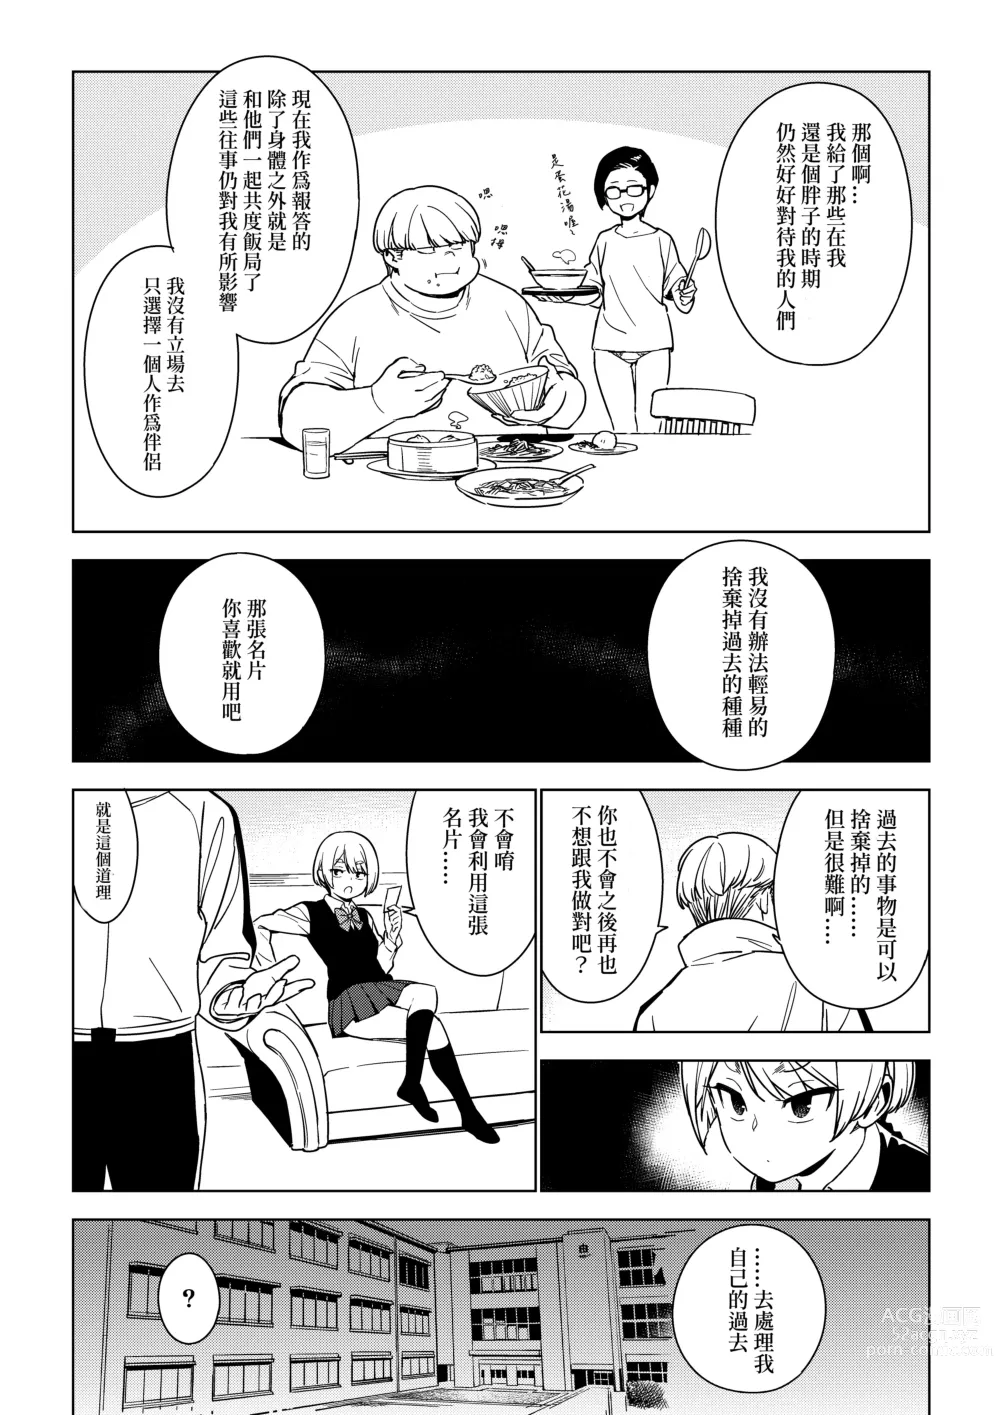 Page 32 of doujinshi Seiko